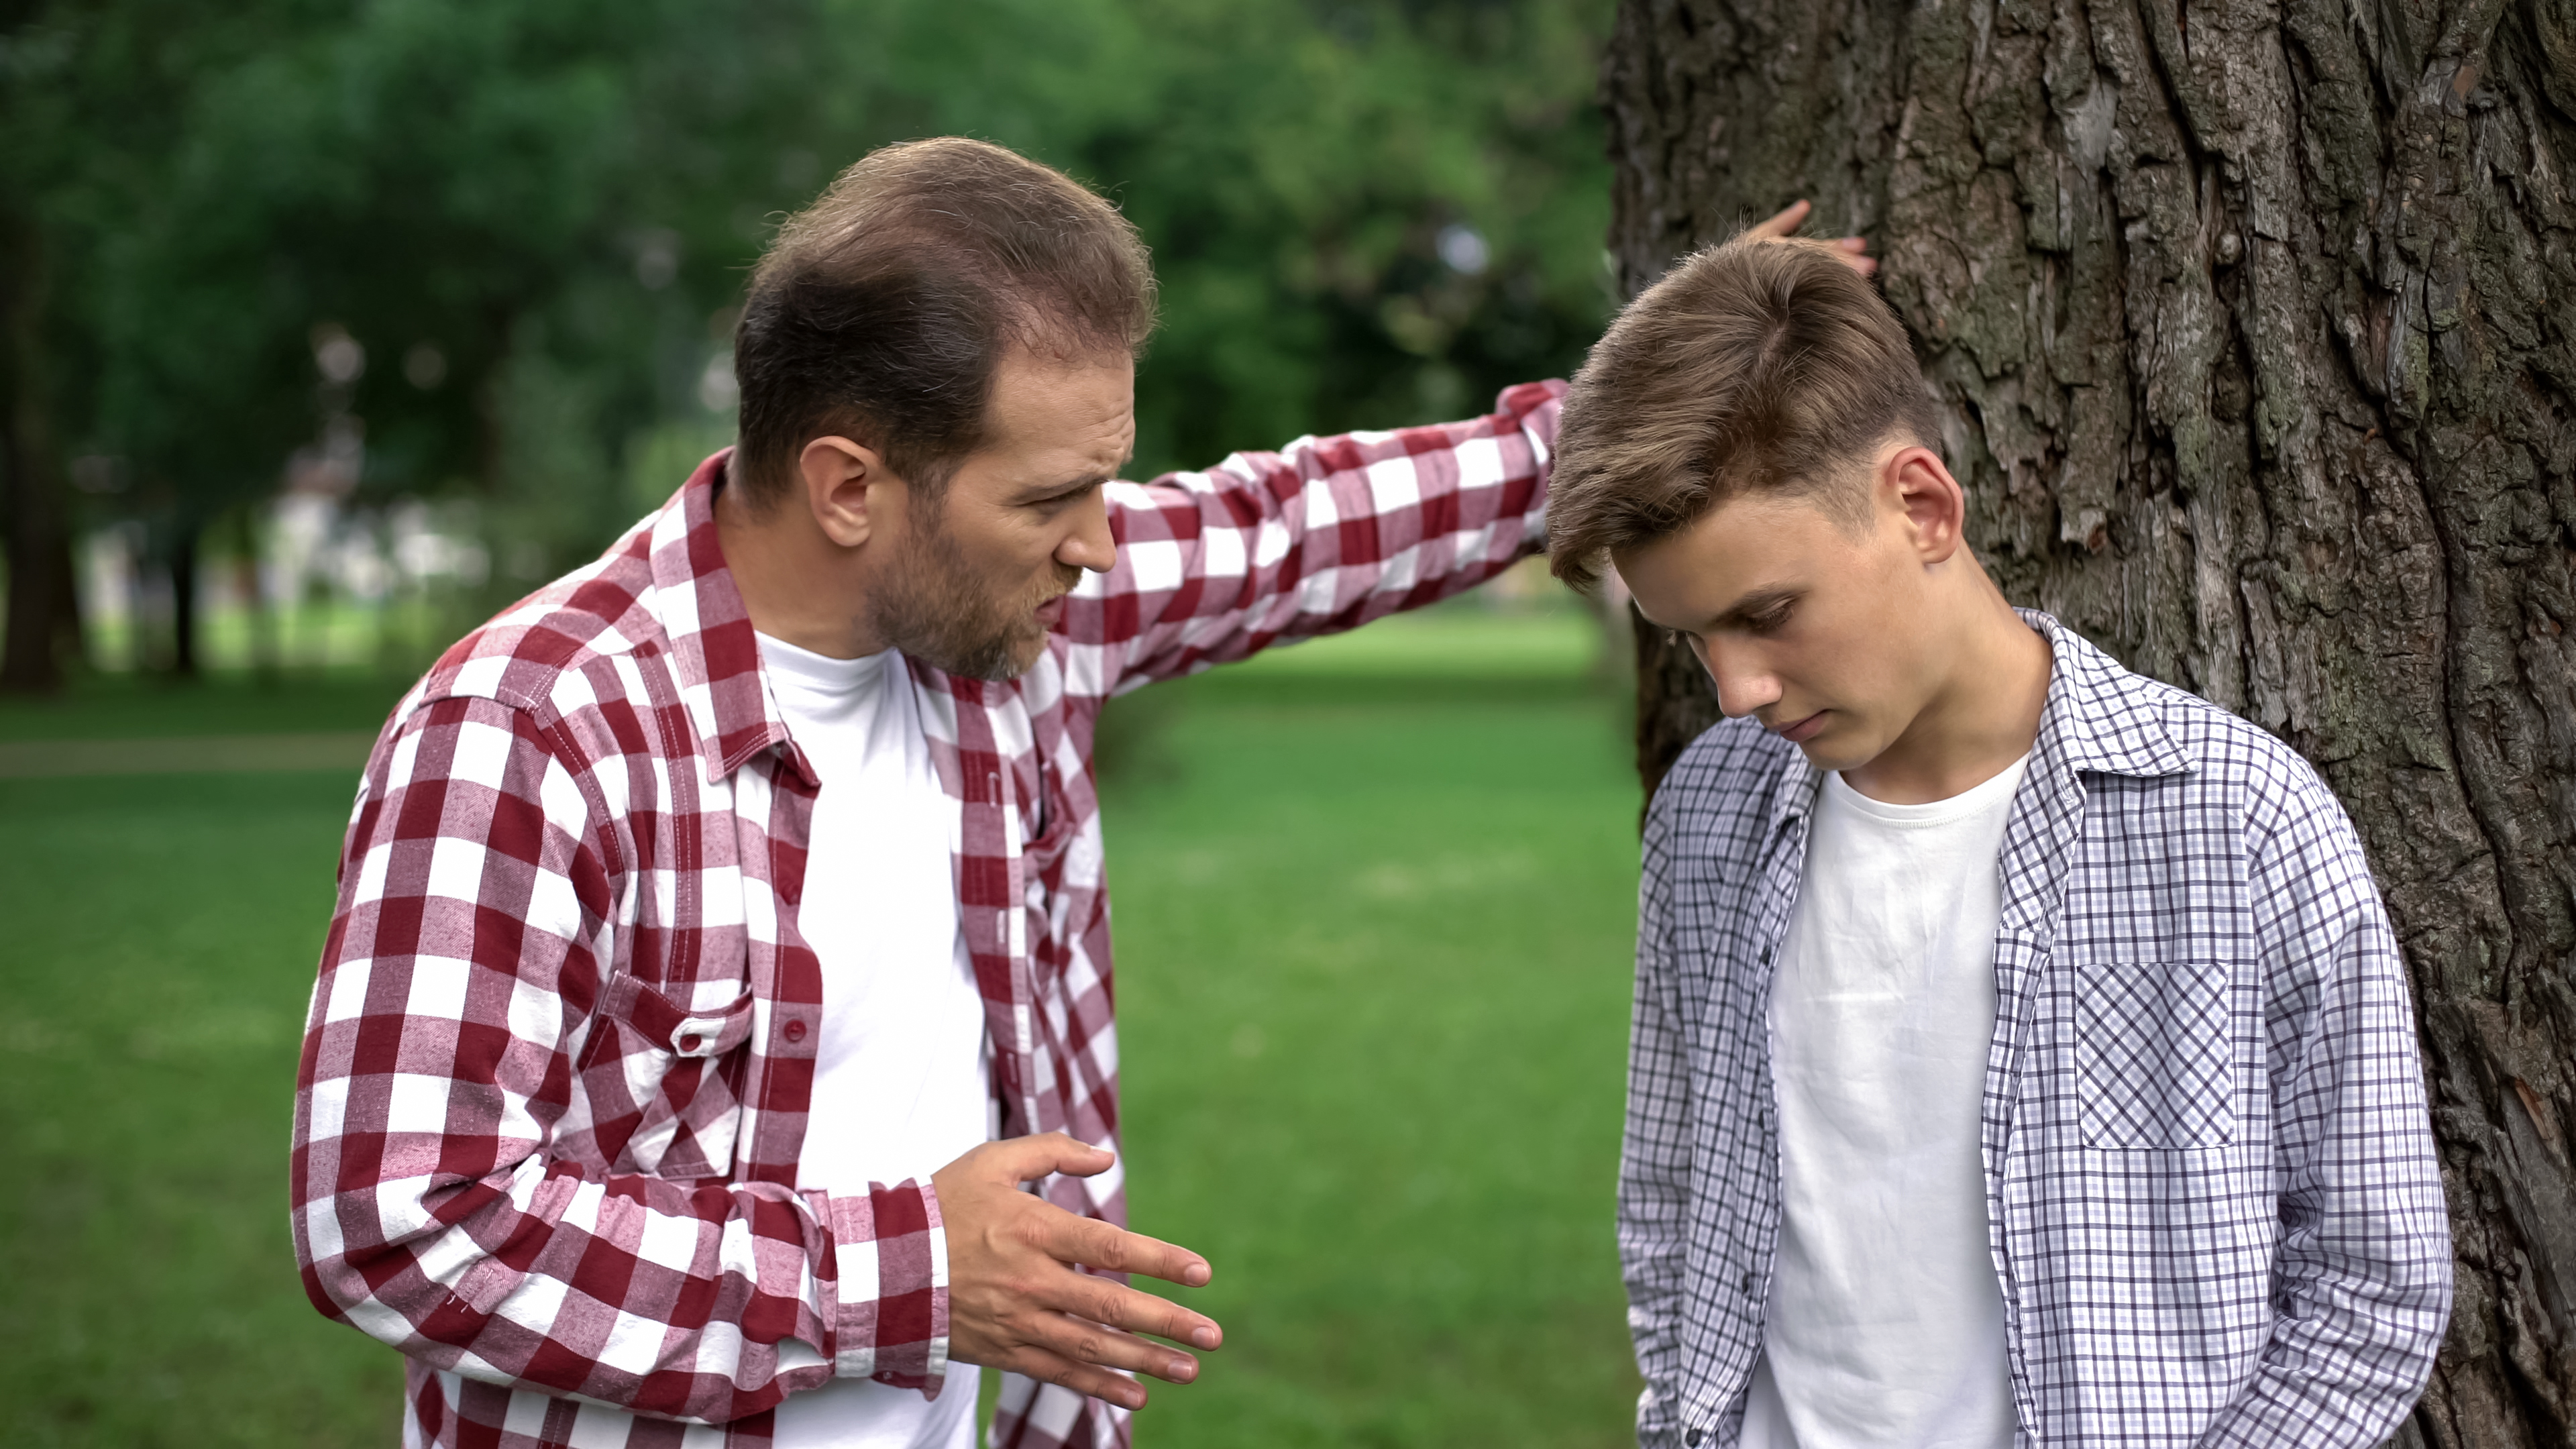 Un père sévère réprimande son fils pour ses mauvais résultats scolaires. | Source : Shutterstock